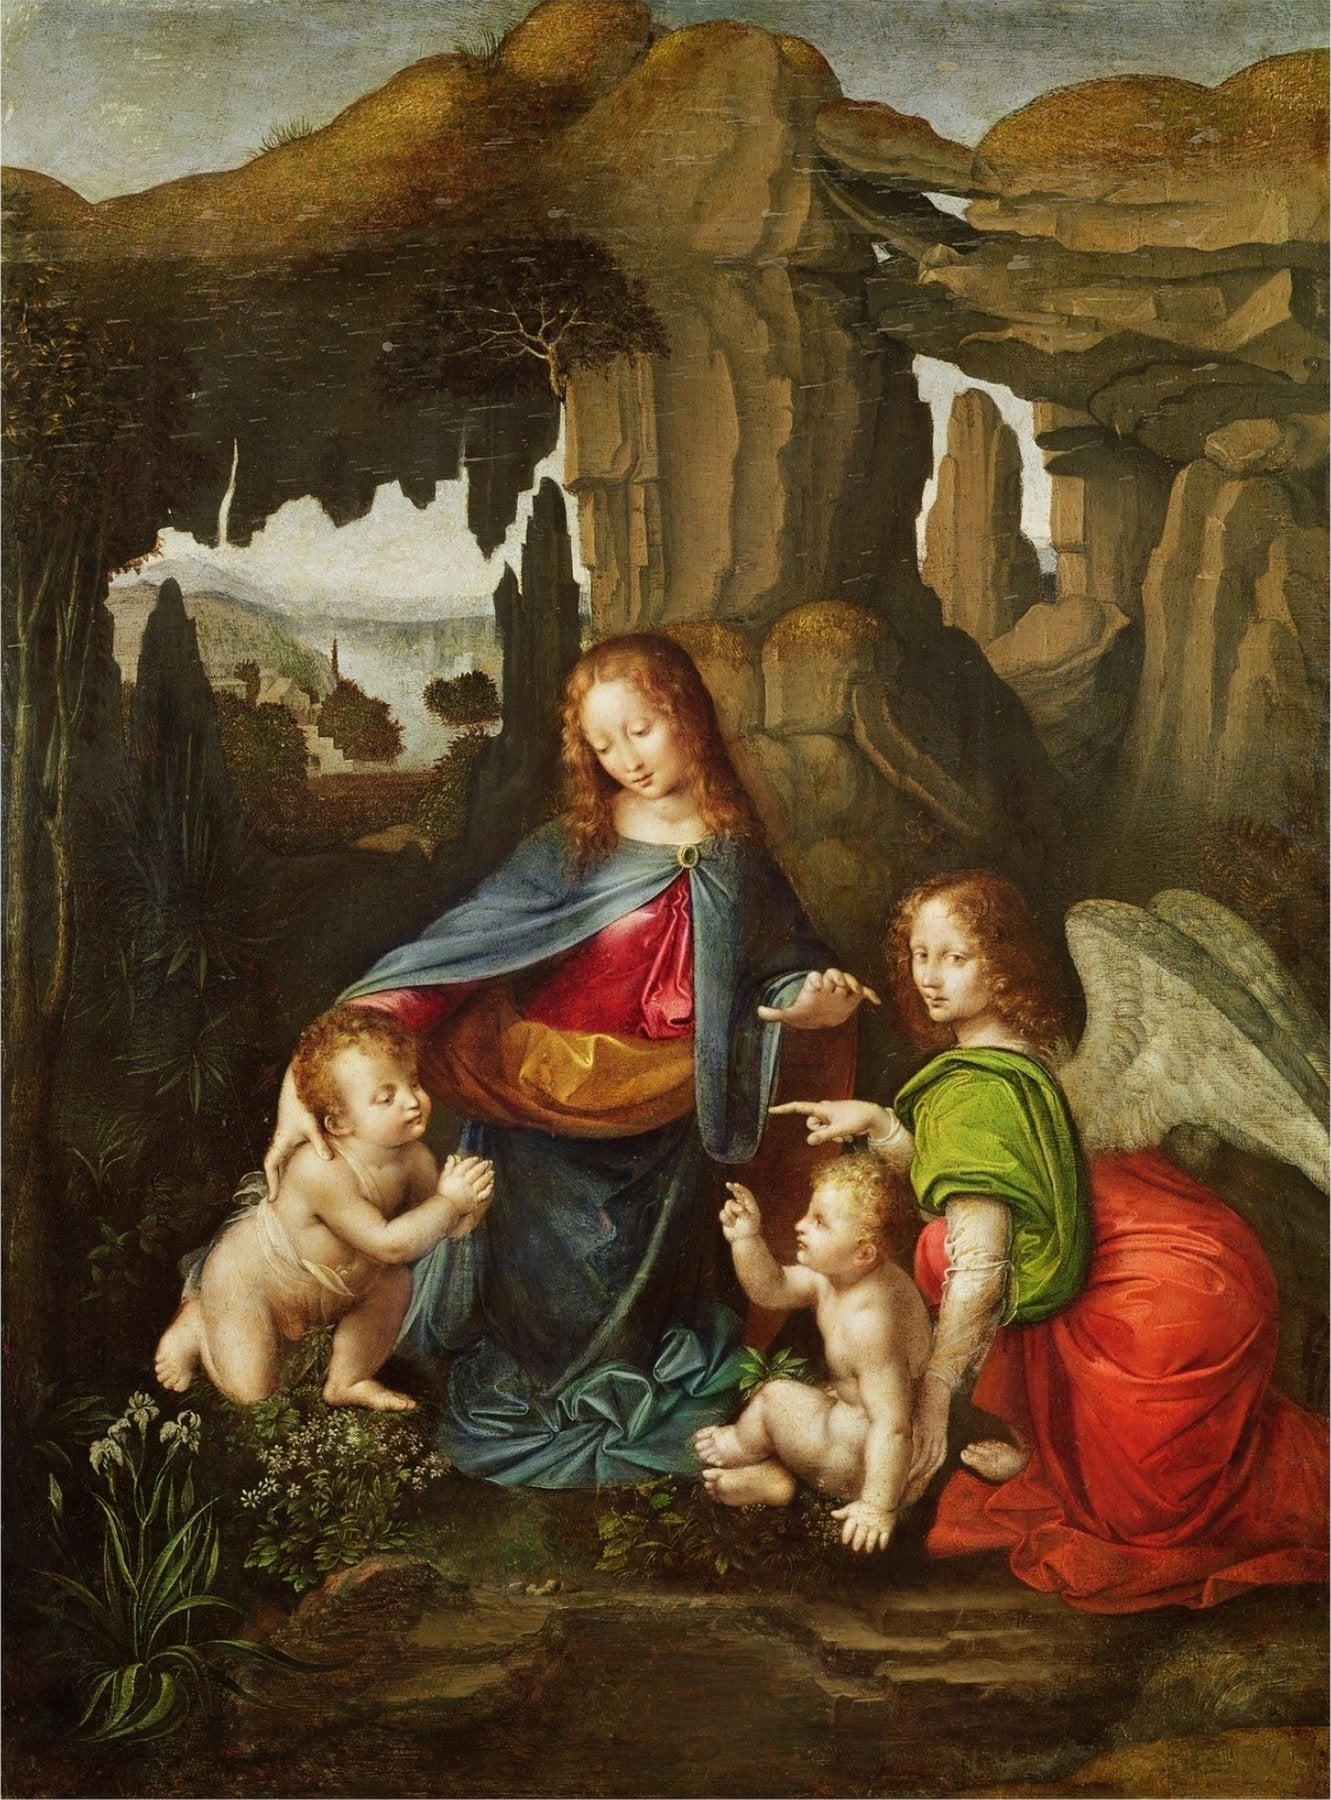 La Vierge aux rochers - Léonard de Vinci